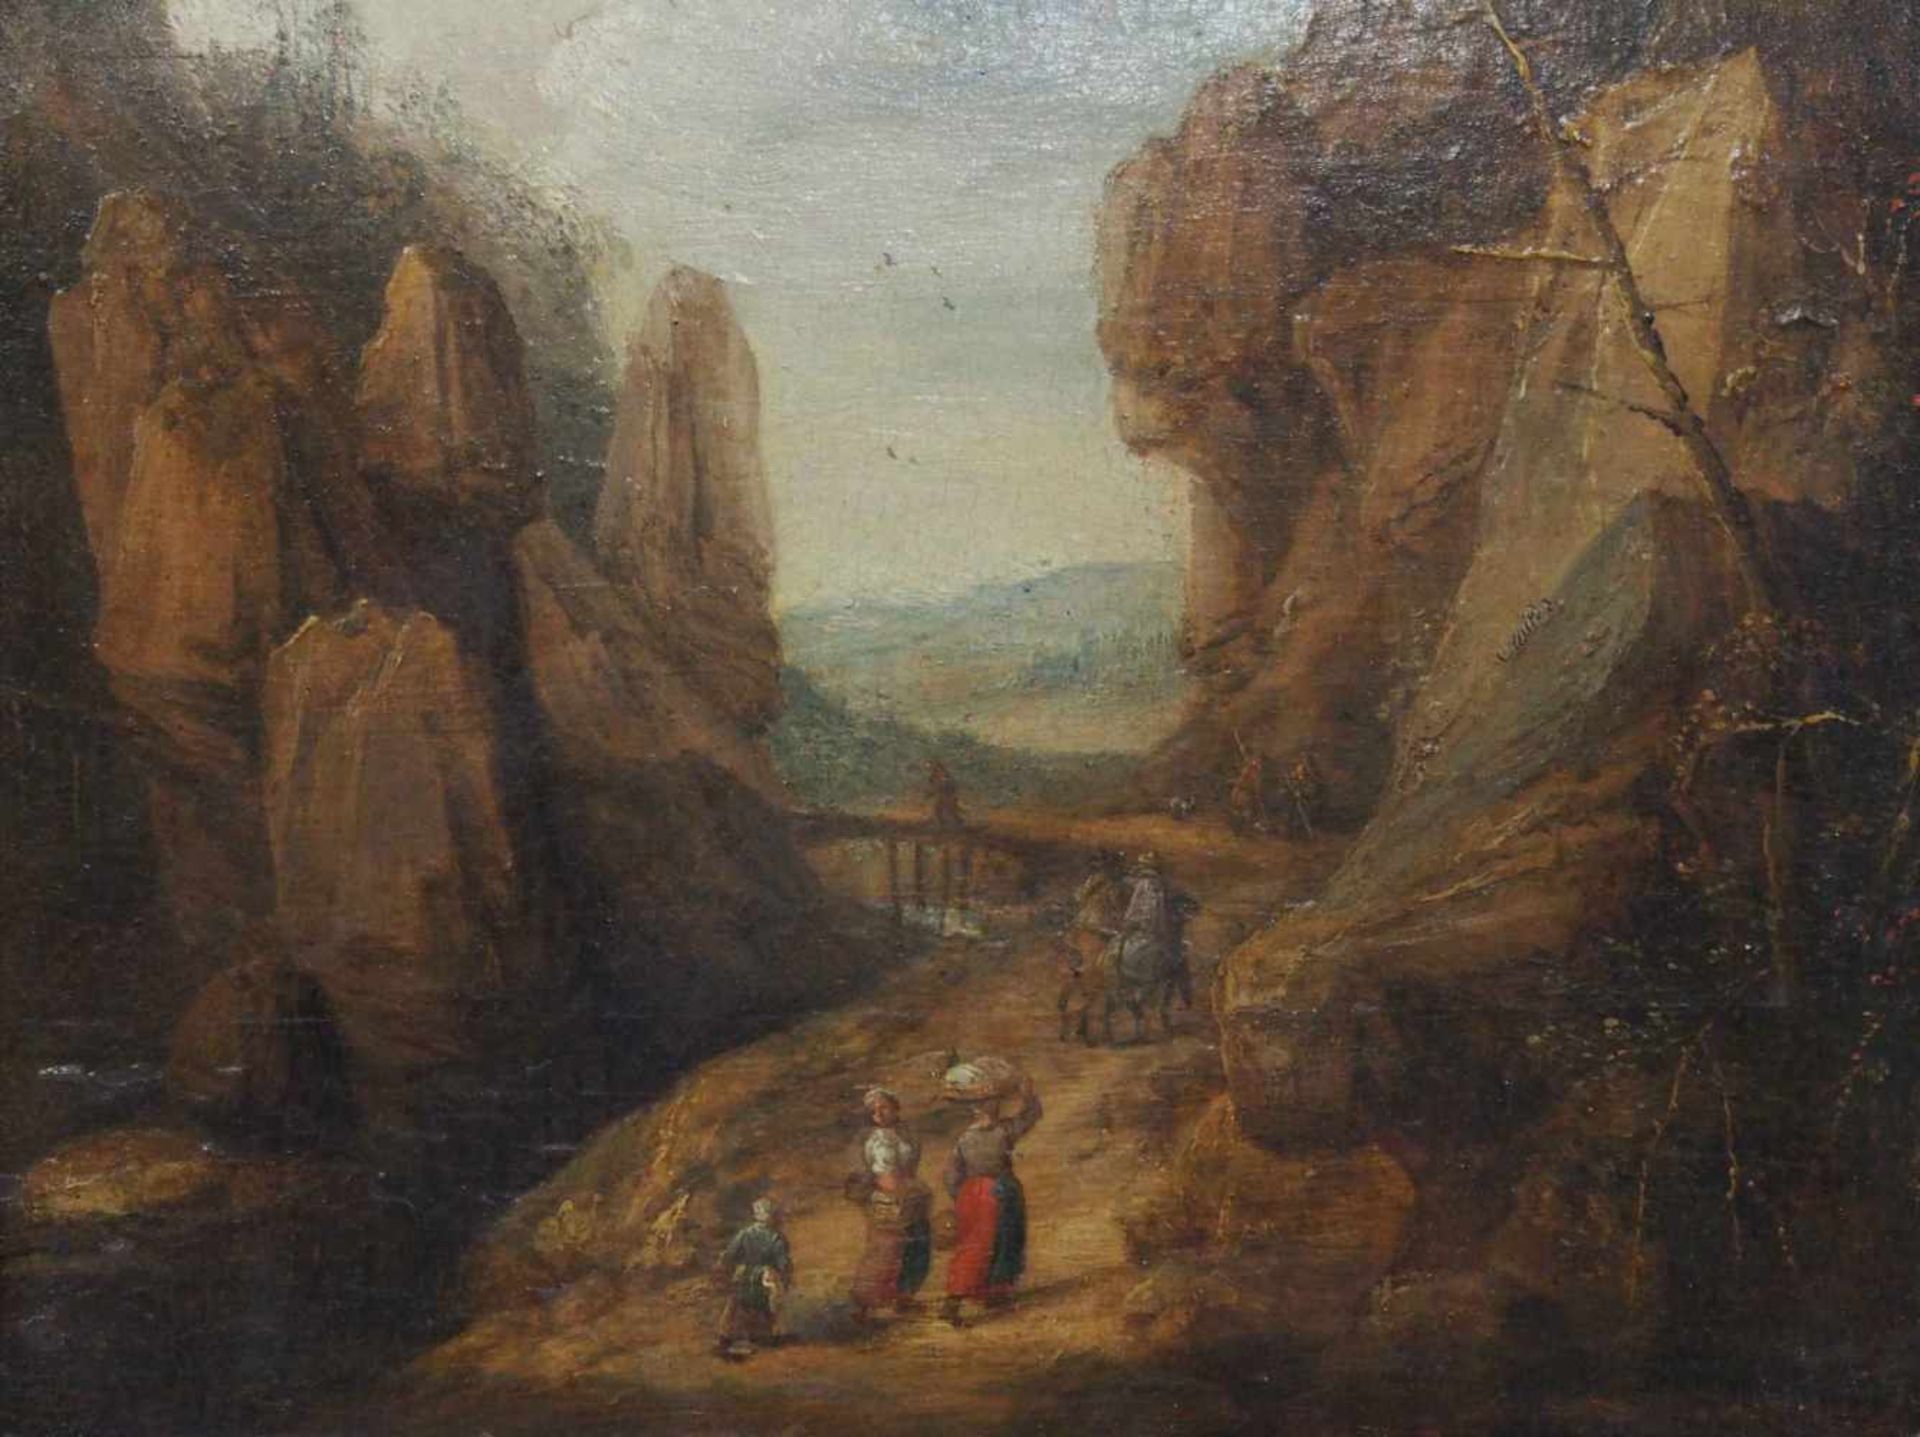 FLÄMISCHER MEISTERum 1600Wanderer und Reisende in einer FelsenschluchtÖl auf Holz, 18,5 x 23,5 cm,